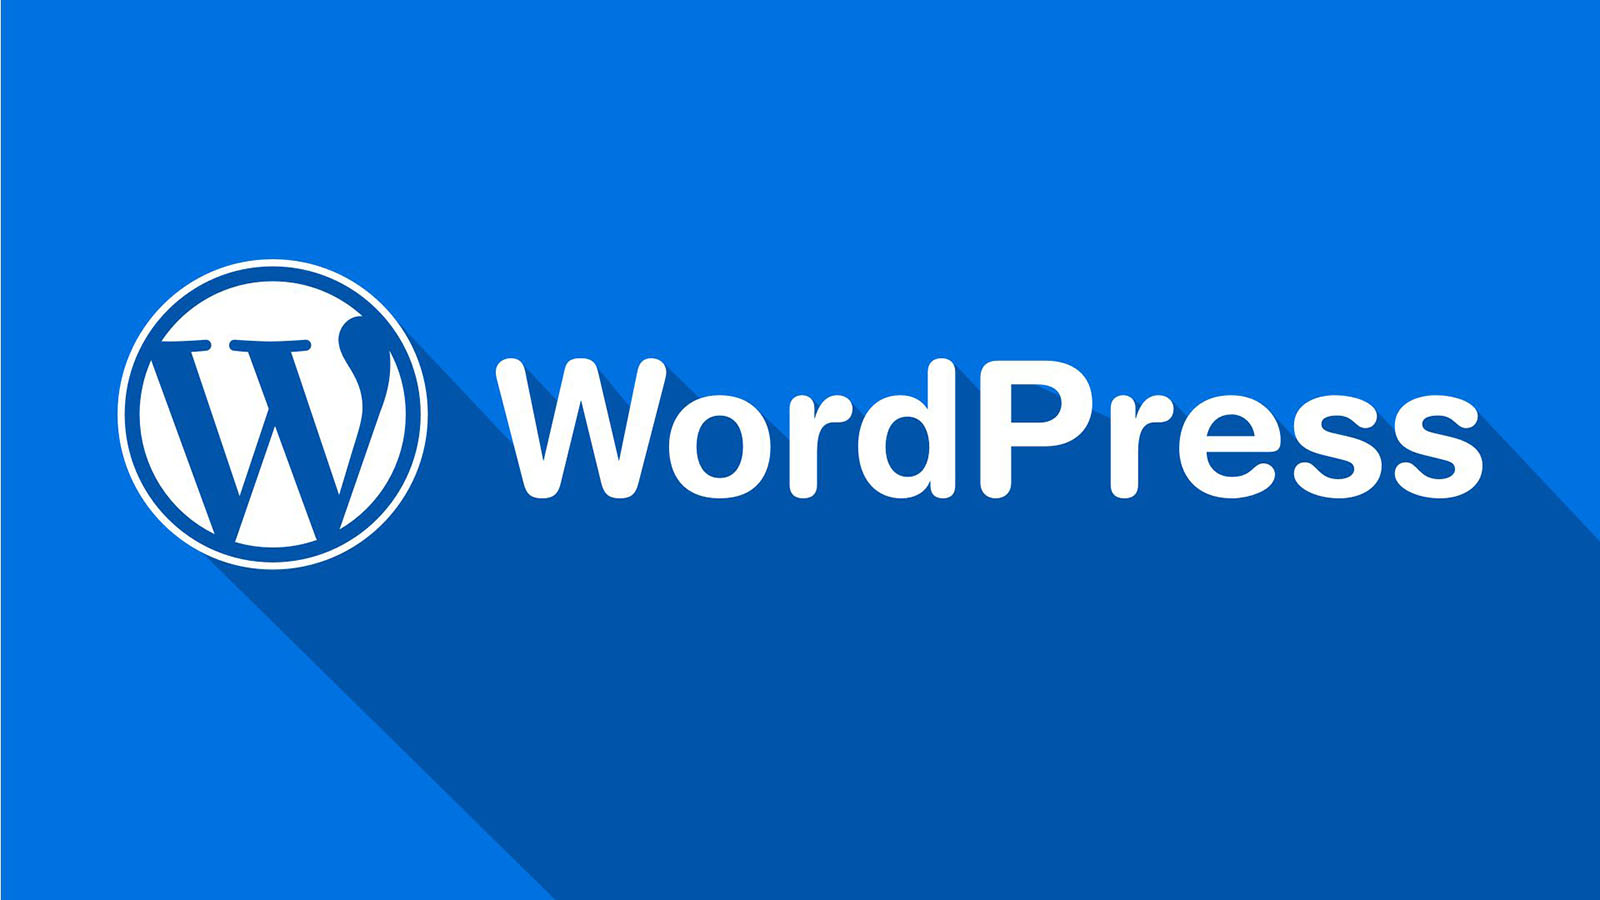 WordPress 2022 年会发布 6.0 和 6.1 两个主要版本